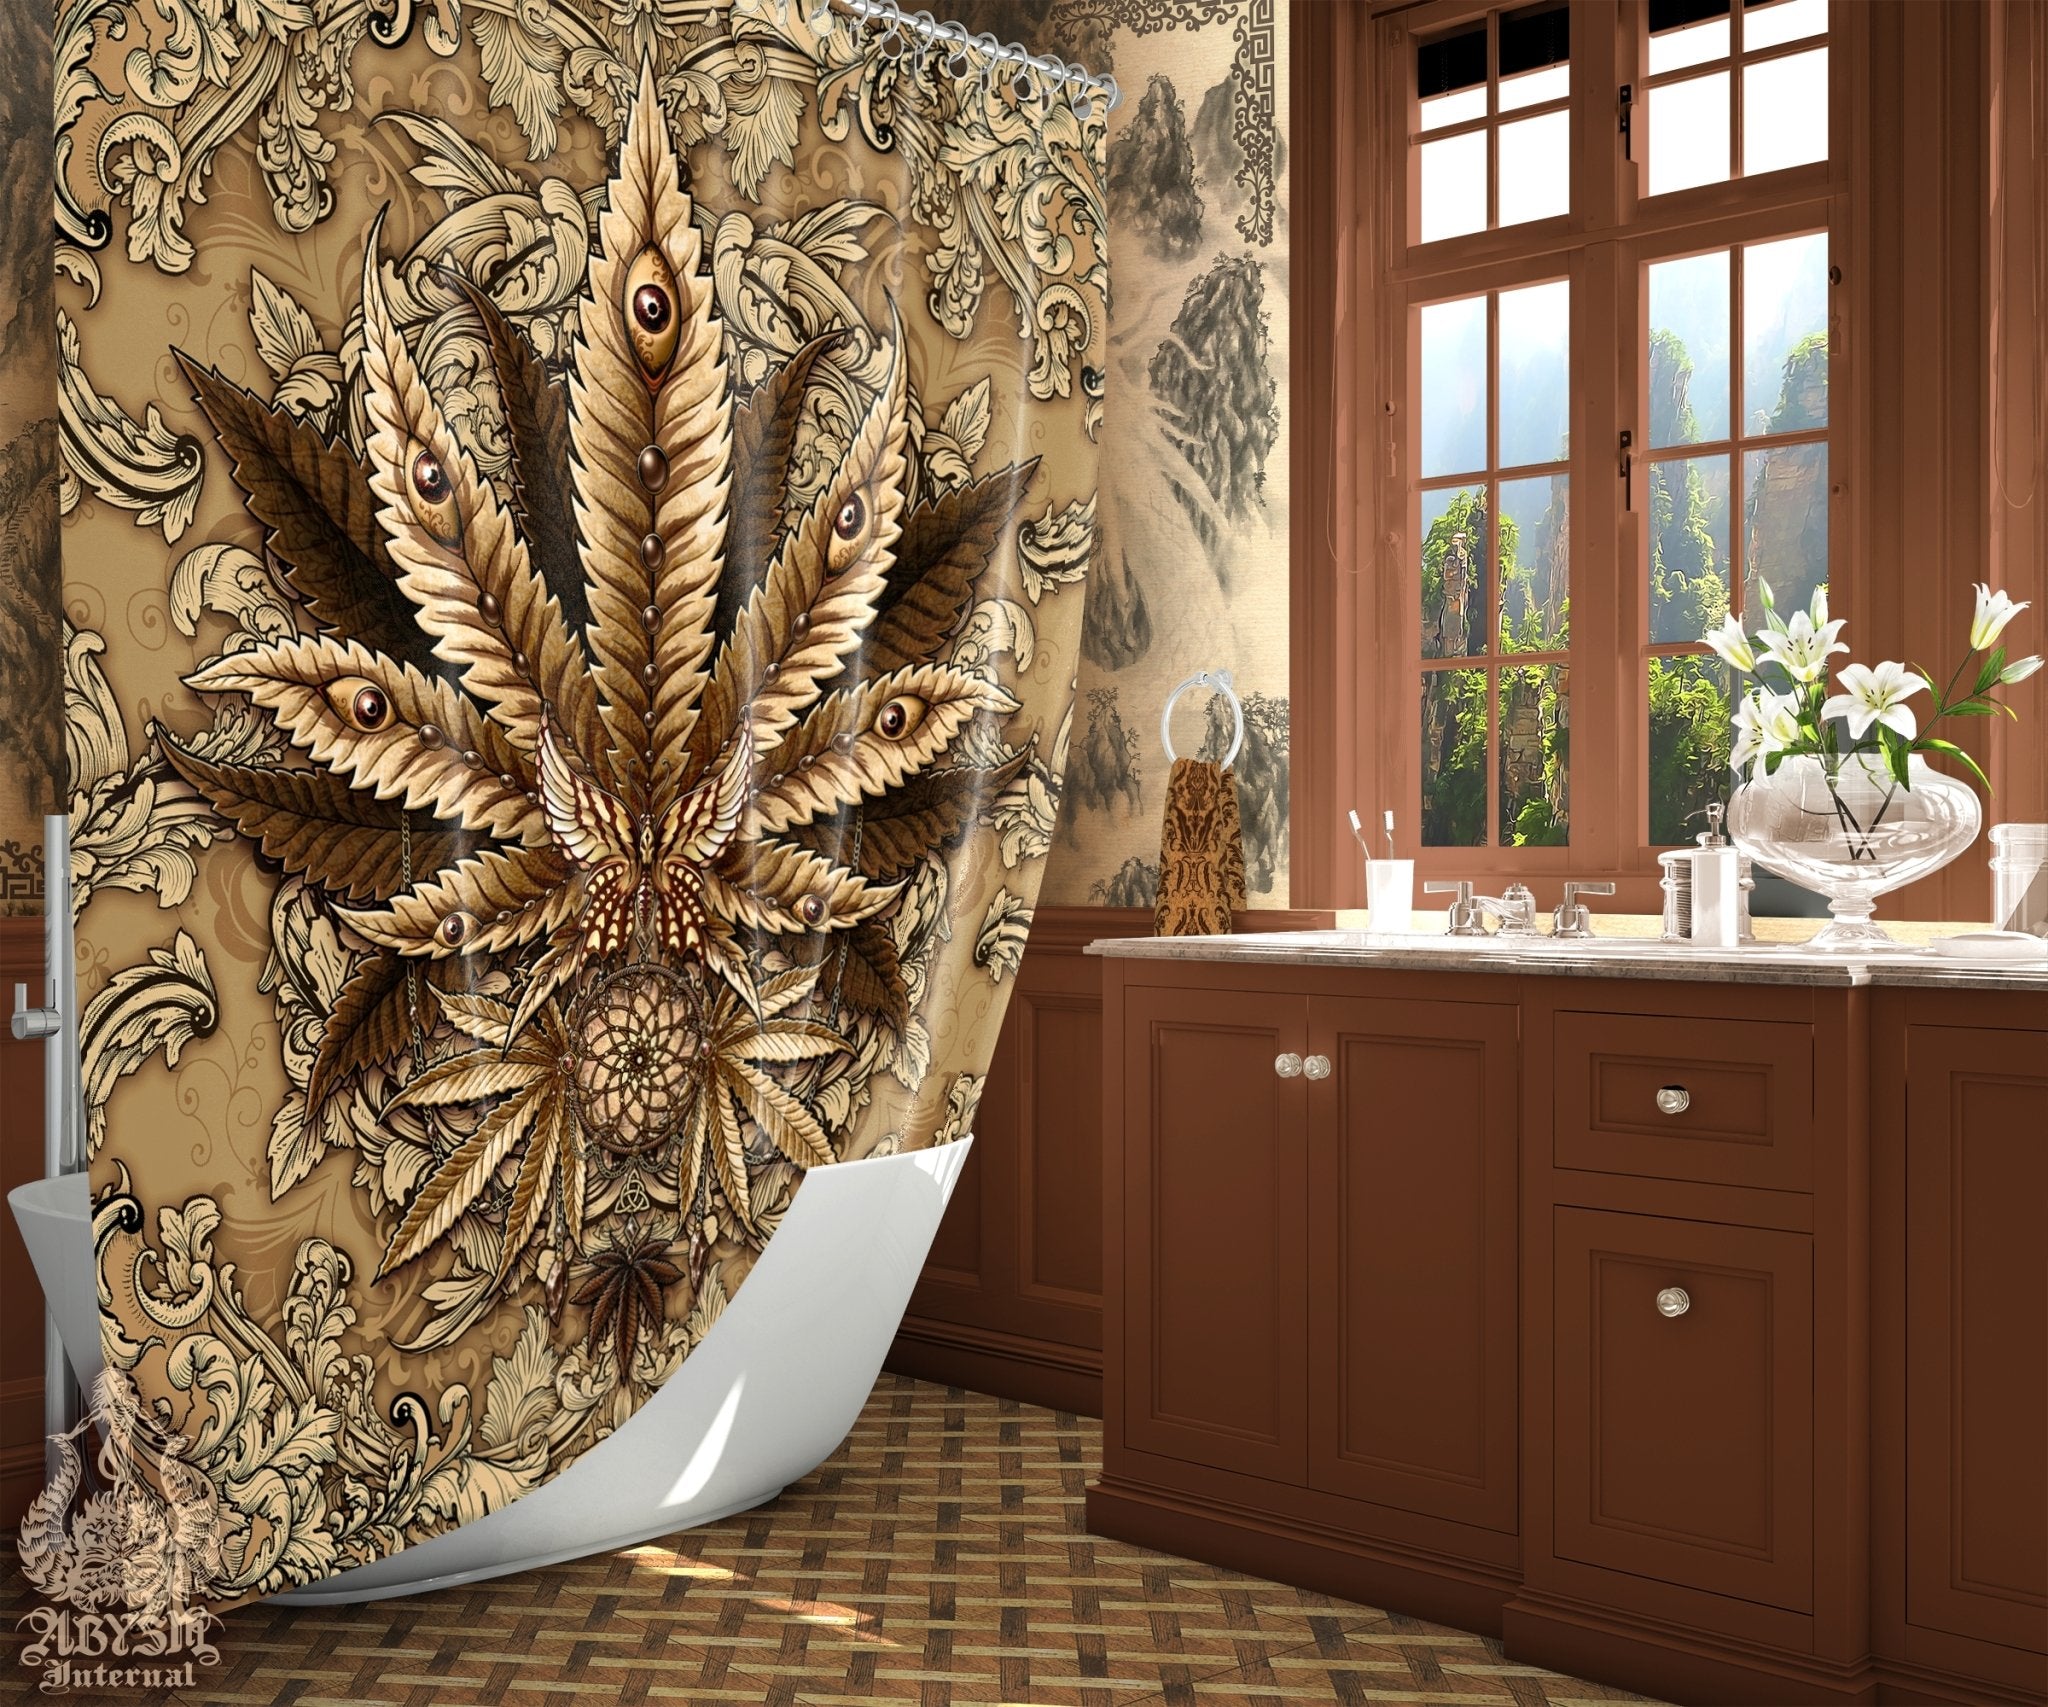 Weed Shower Curtain, Indie Bathroom Decor, Cannabis Print, Hippie 420 Home Art - Marijuana, Cream - Abysm Internal